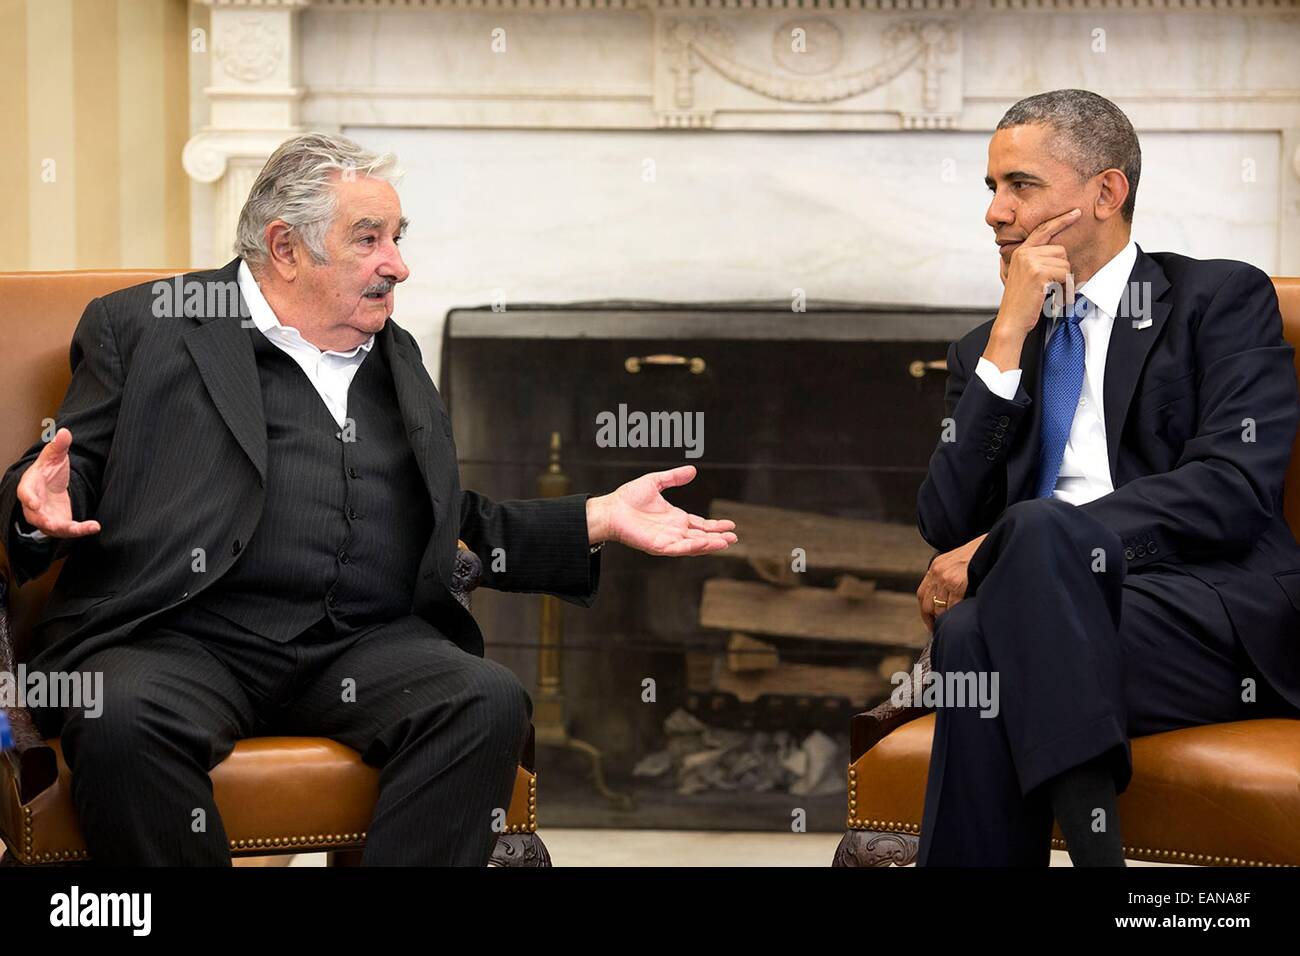 Le président américain Barack Obama rencontre avec l'Uruguay Le président José Mujica Cordano dans le bureau ovale de la Maison Blanche le 12 mai 2014 dans Banque D'Images